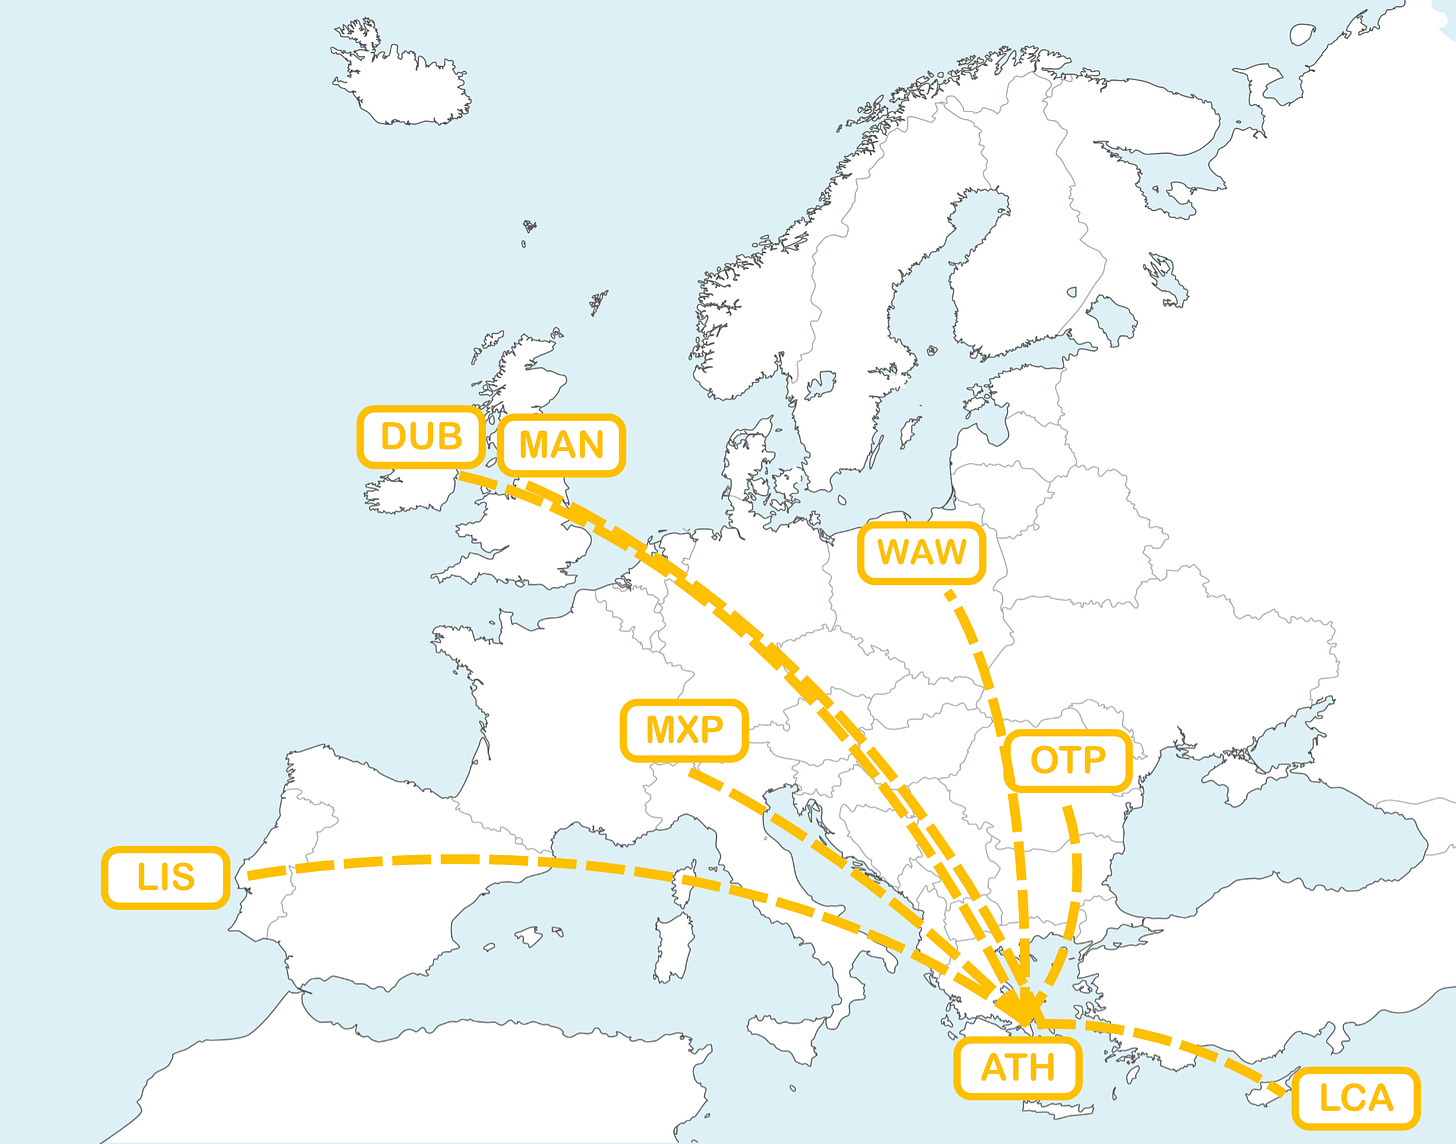 Ο χάρτης της Ευρώπης με τους ιδανικούς προορισμούς (miles-wise) στο δίκτυο της Aegean για business ταξίδια